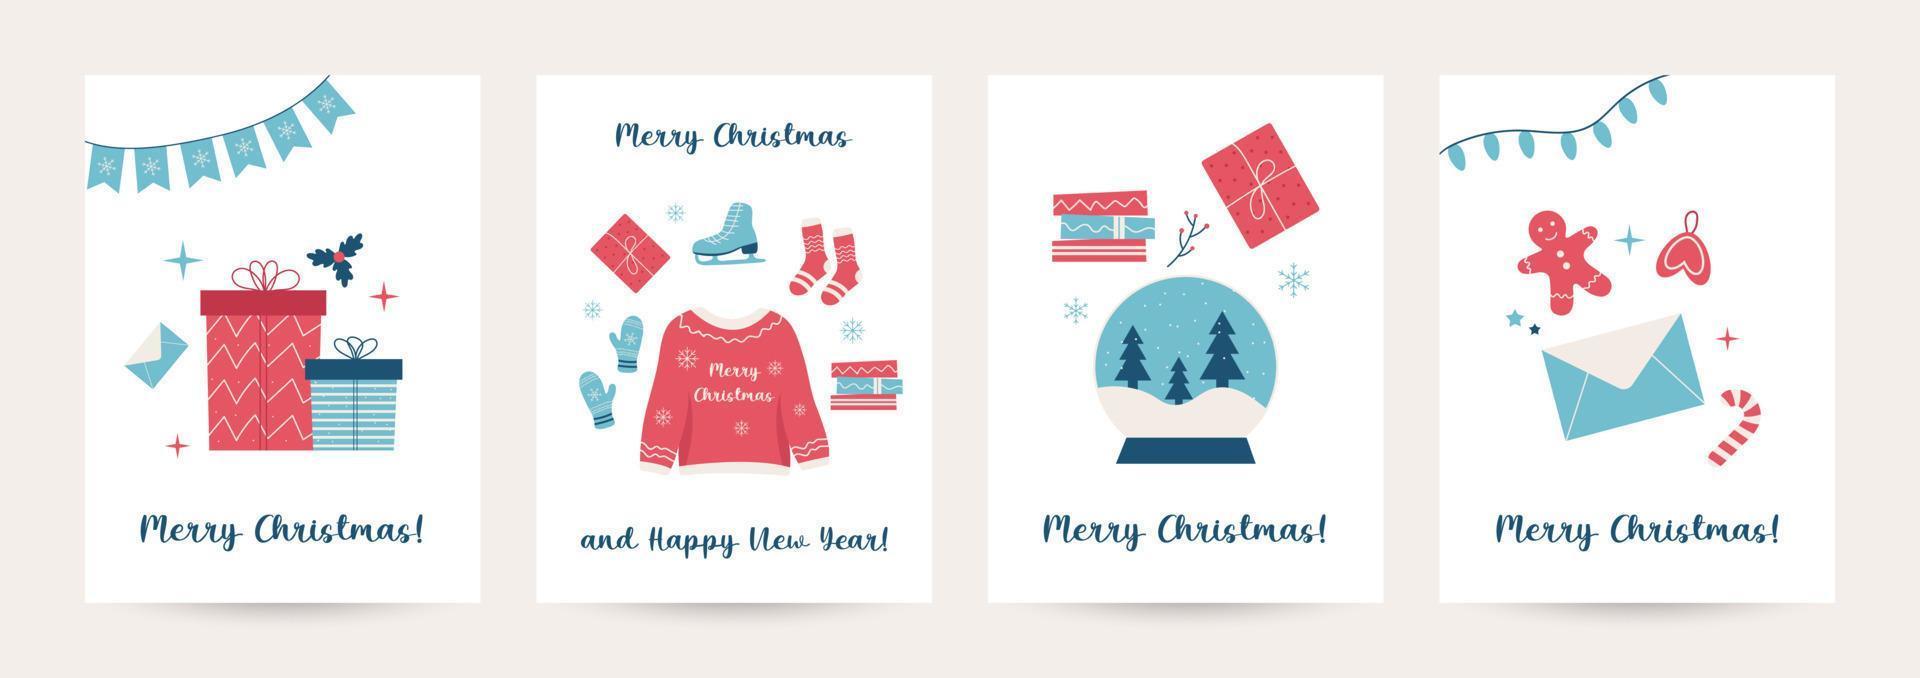 samling av vinter- krama bakgrund uppsättning med gåvor, träd, jul krama element, redigerbar vektor illustration för jul inbjudan, vykort och hemsida baner, hälsning kort